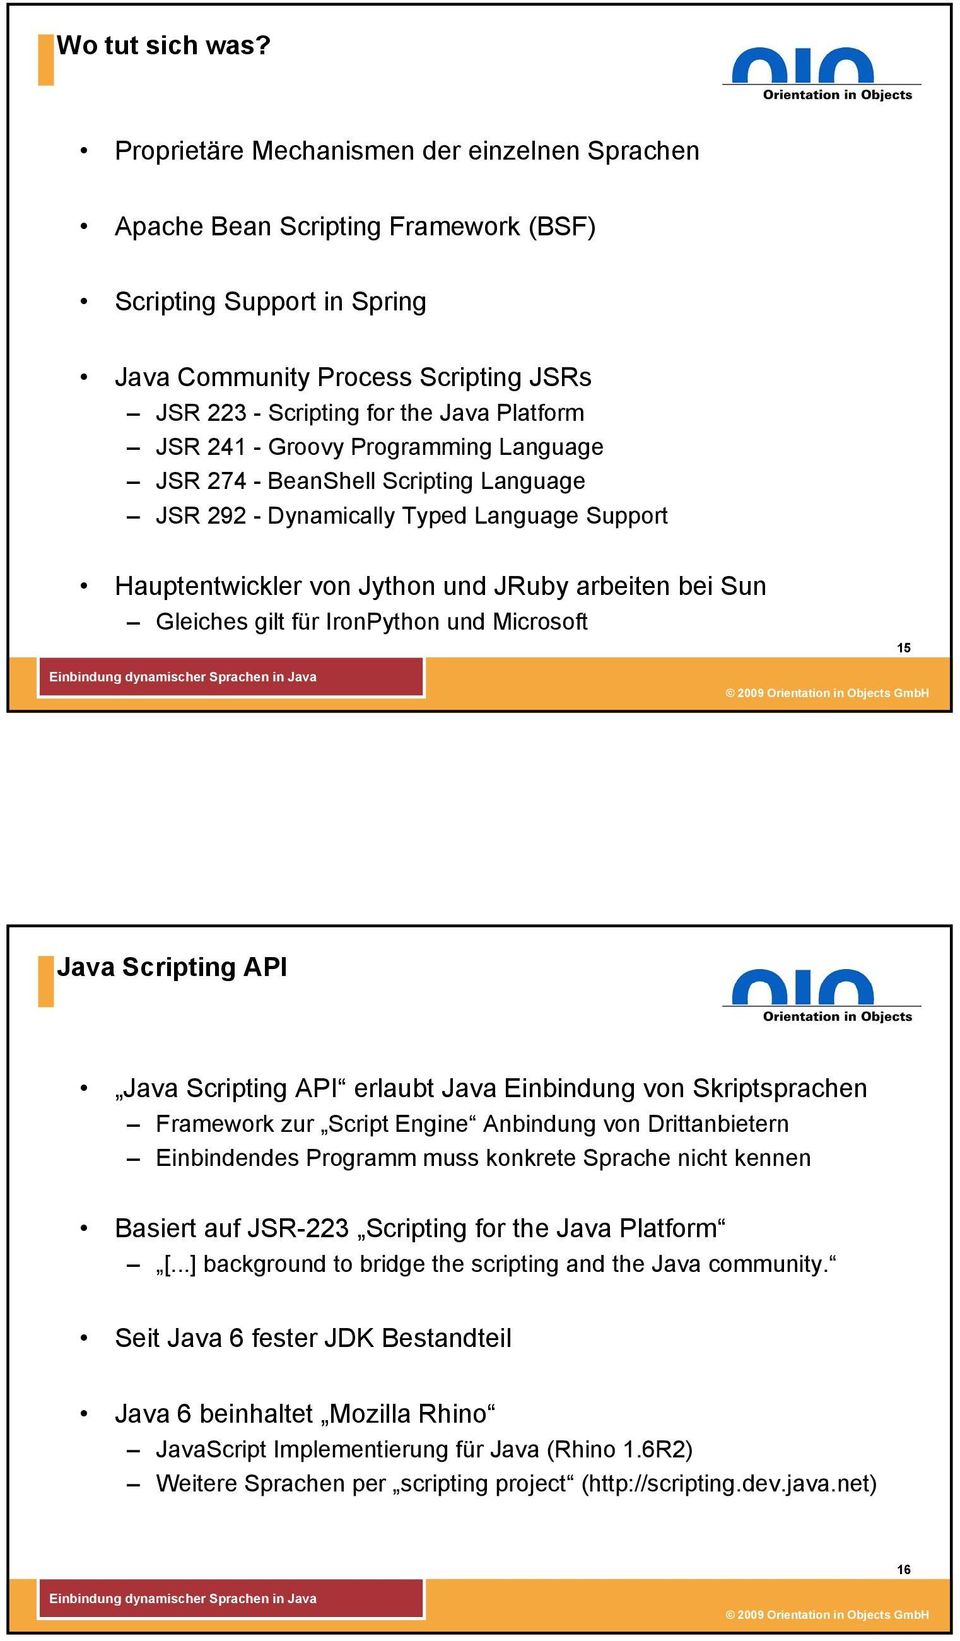 241 - Groovy Programming Language JSR 274 - BeanShell Scripting Language JSR 292 - Dynamically Typed Language Support Hauptentwickler von Jython und JRuby arbeiten bei Sun Gleiches gilt für